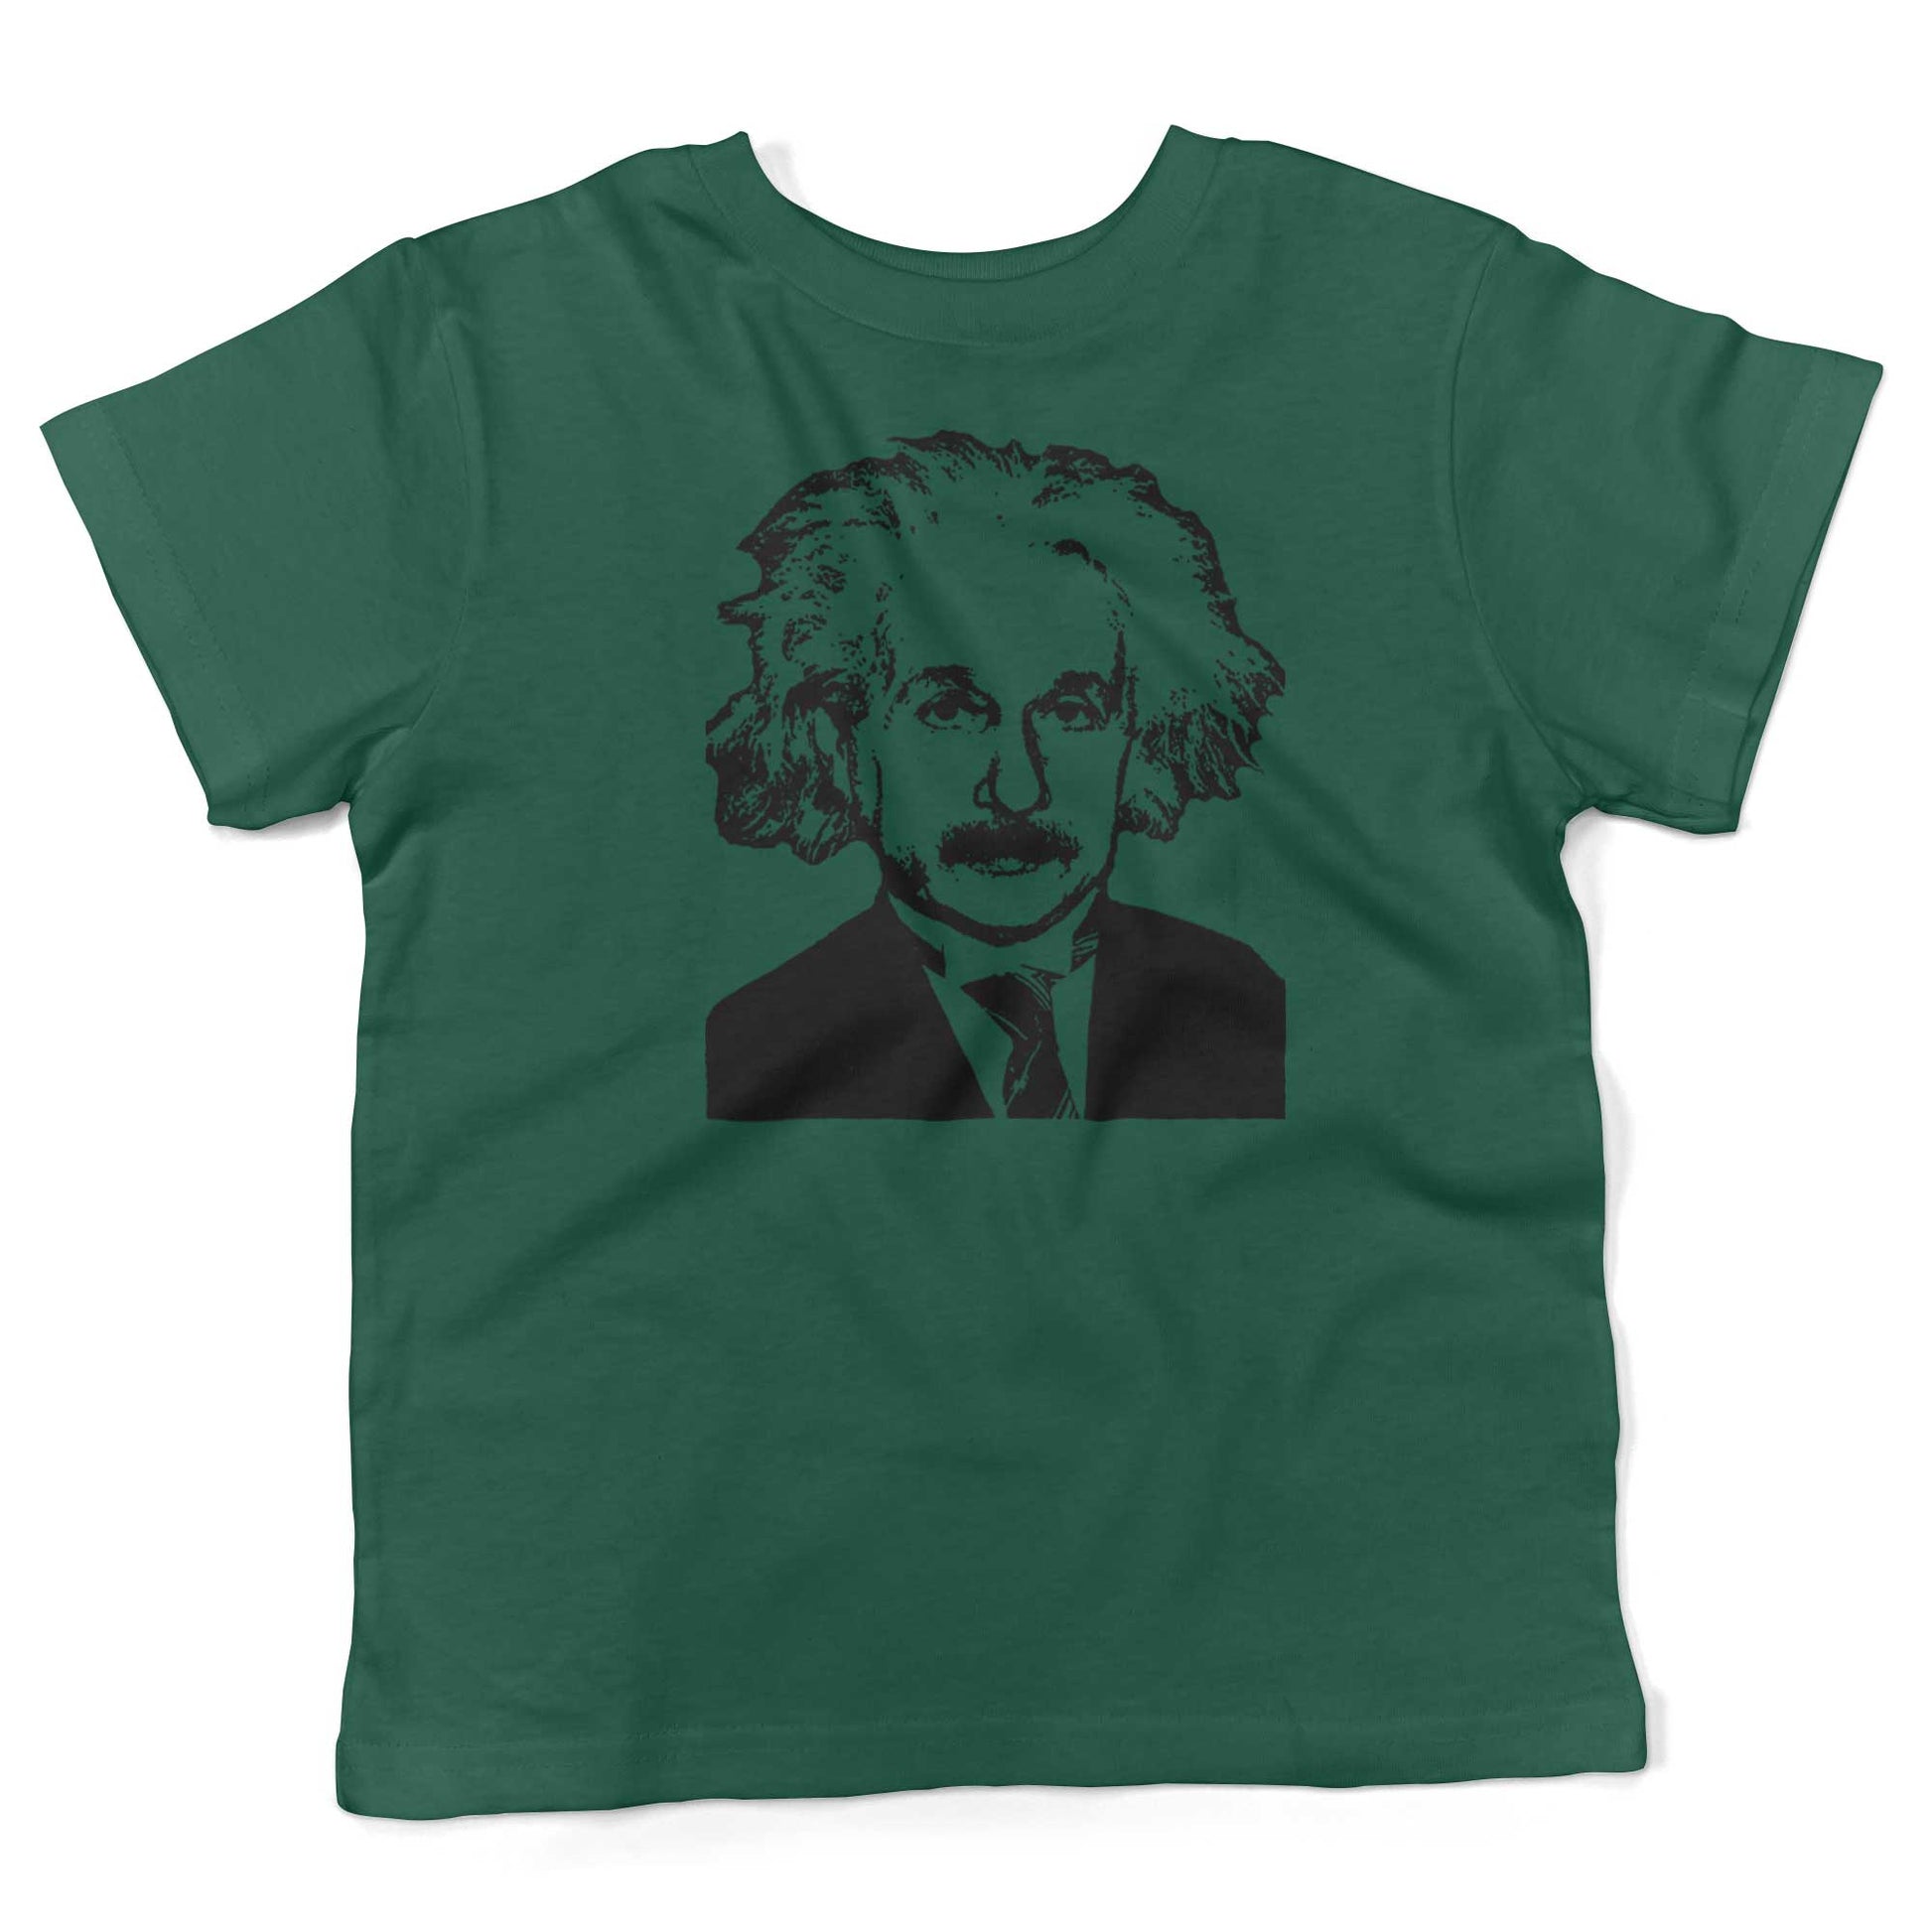 Albert Einstein Toddler Shirt-Kelly Green-2T